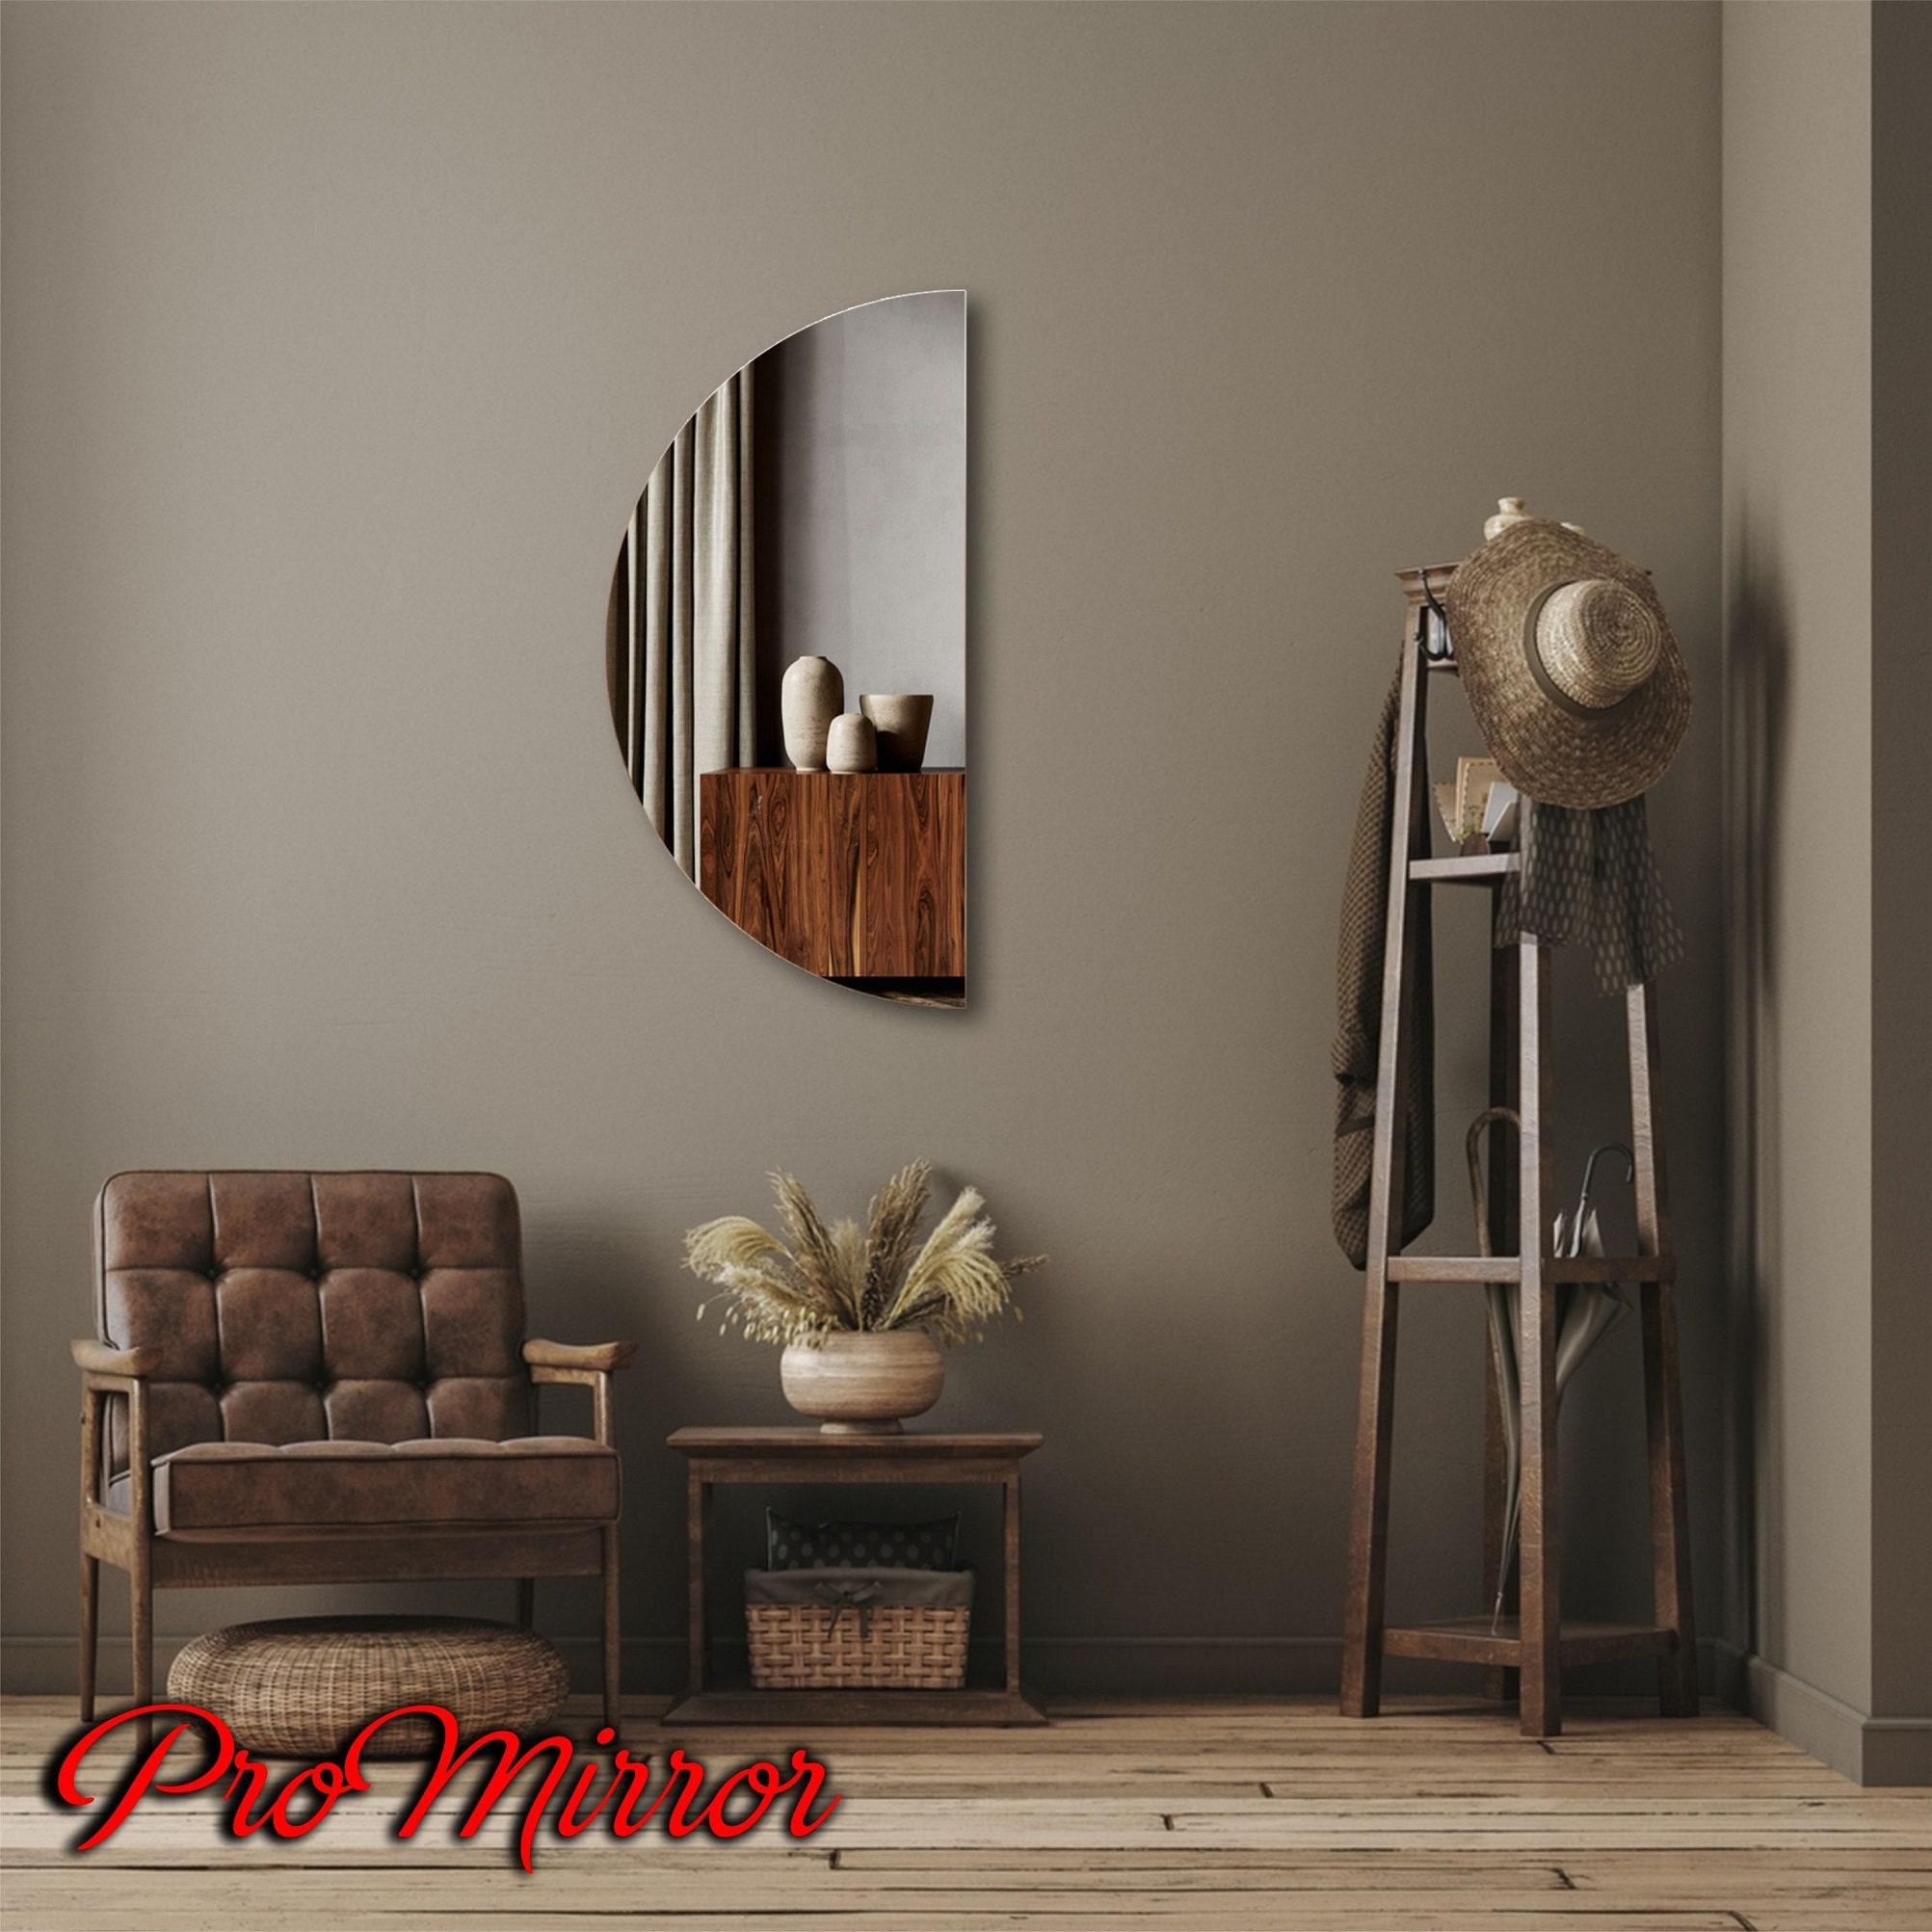 Espejo Ovalado Decorativo Borde Negro 55 x 80 cm, Espejo de Baño Ovalado  Enmarcado Negro, Espejo de Pared Ovalado